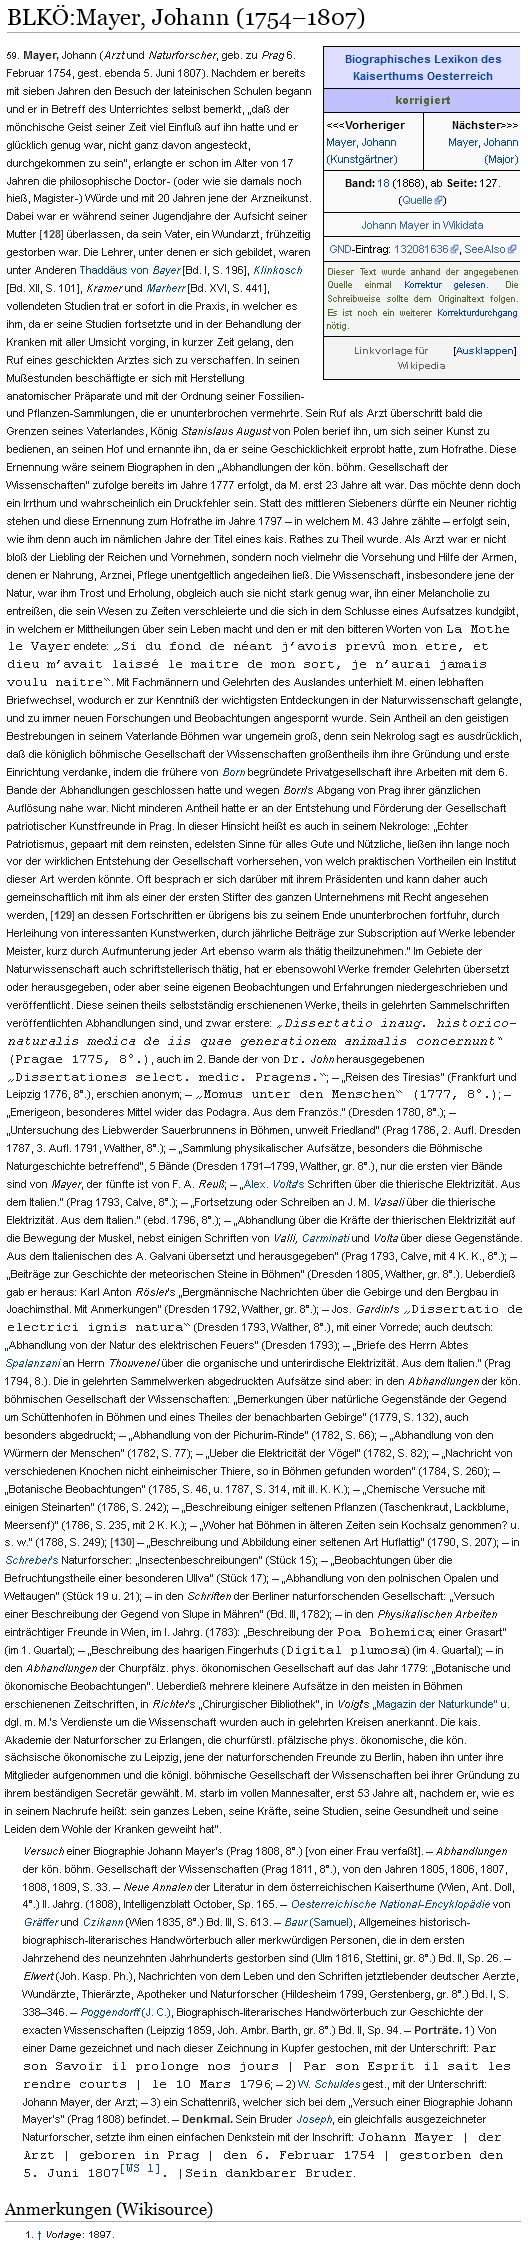 Jeho obsáhlé heslo v lexikonu osobností císařství rakouského